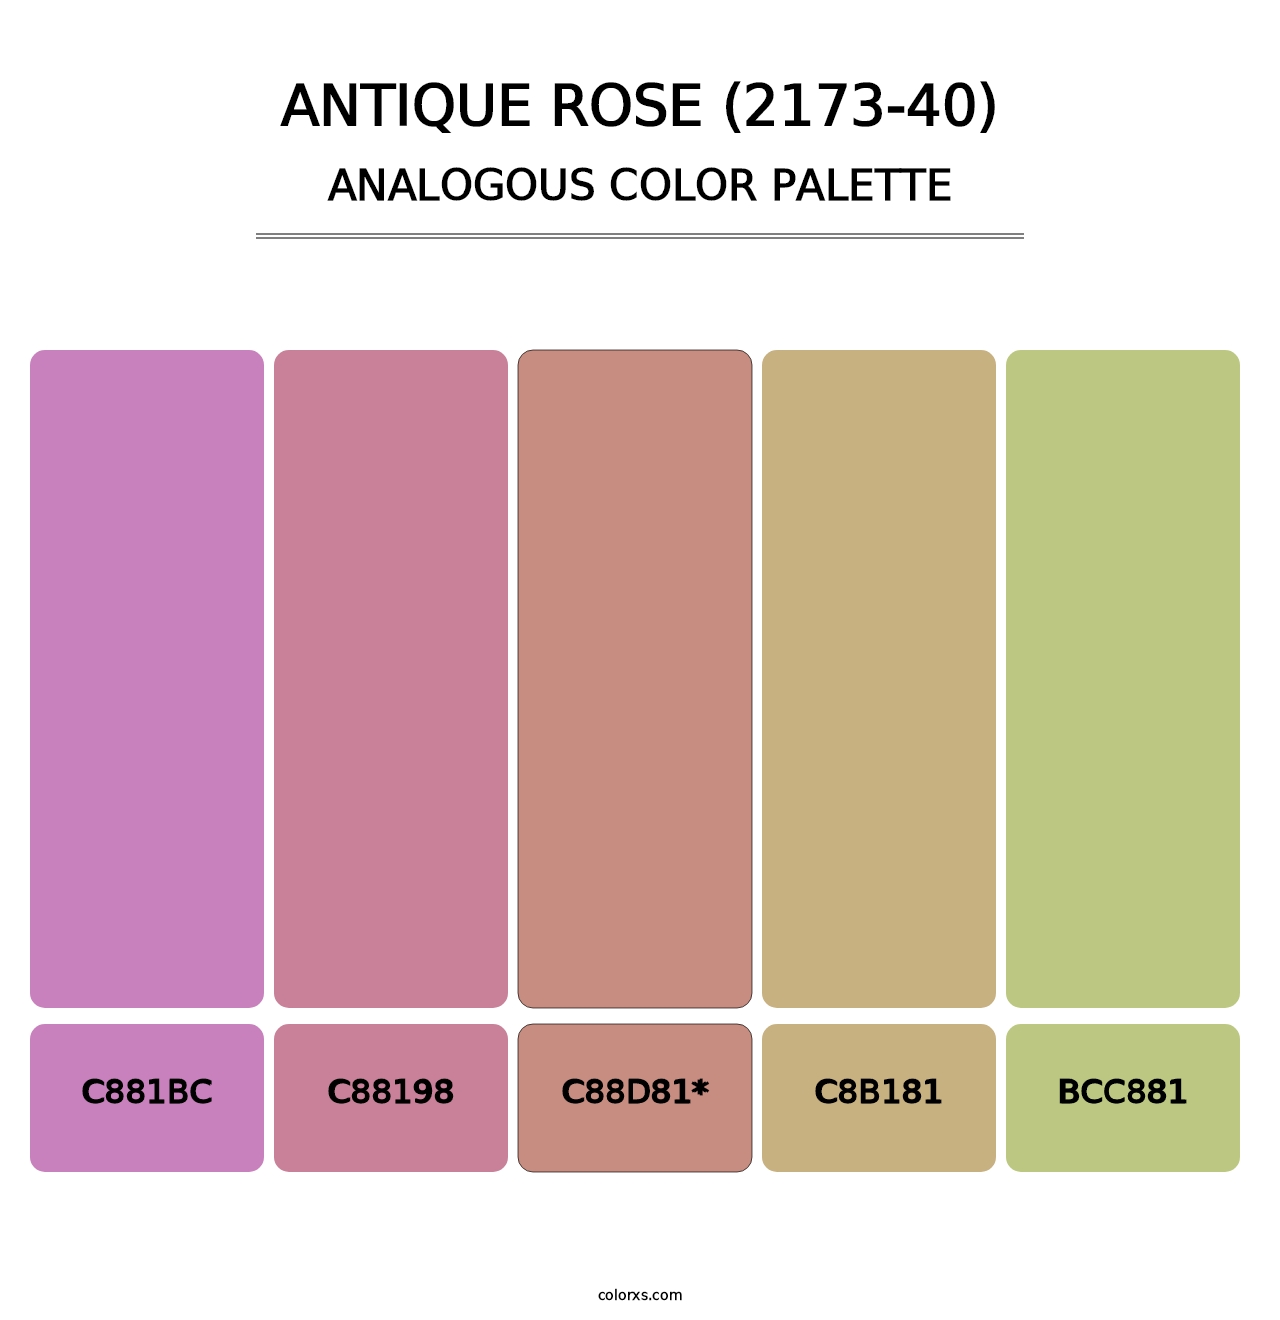 Antique Rose (2173-40) - Analogous Color Palette